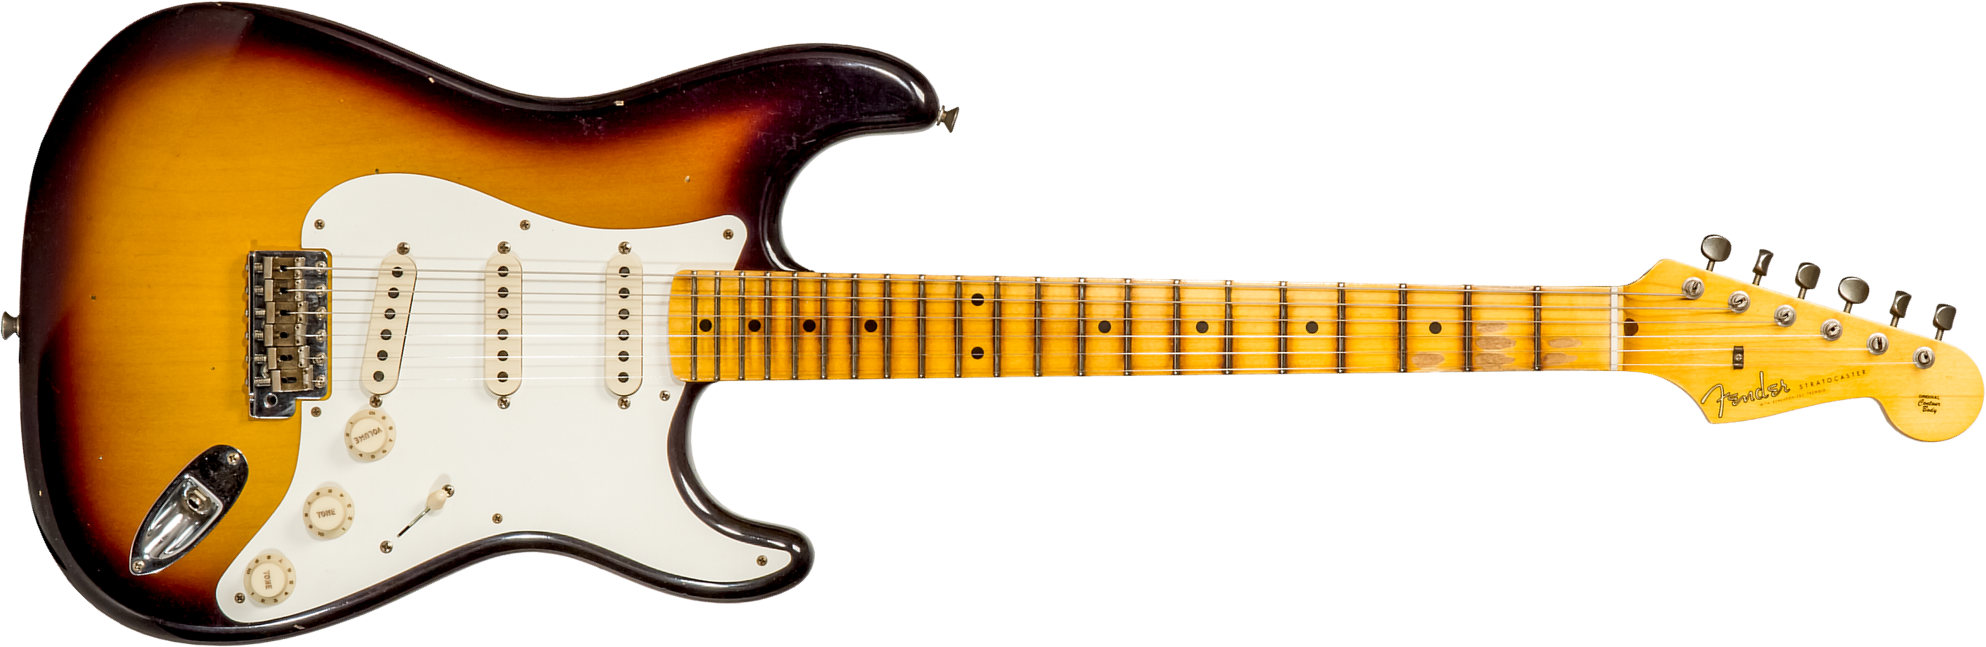 Fender Custom Shop Strat 1956 3s Trem Mn #cz570281 - Journeyman Relic Aged 2-color Sunburst - Guitare Électrique Forme Str - Main picture